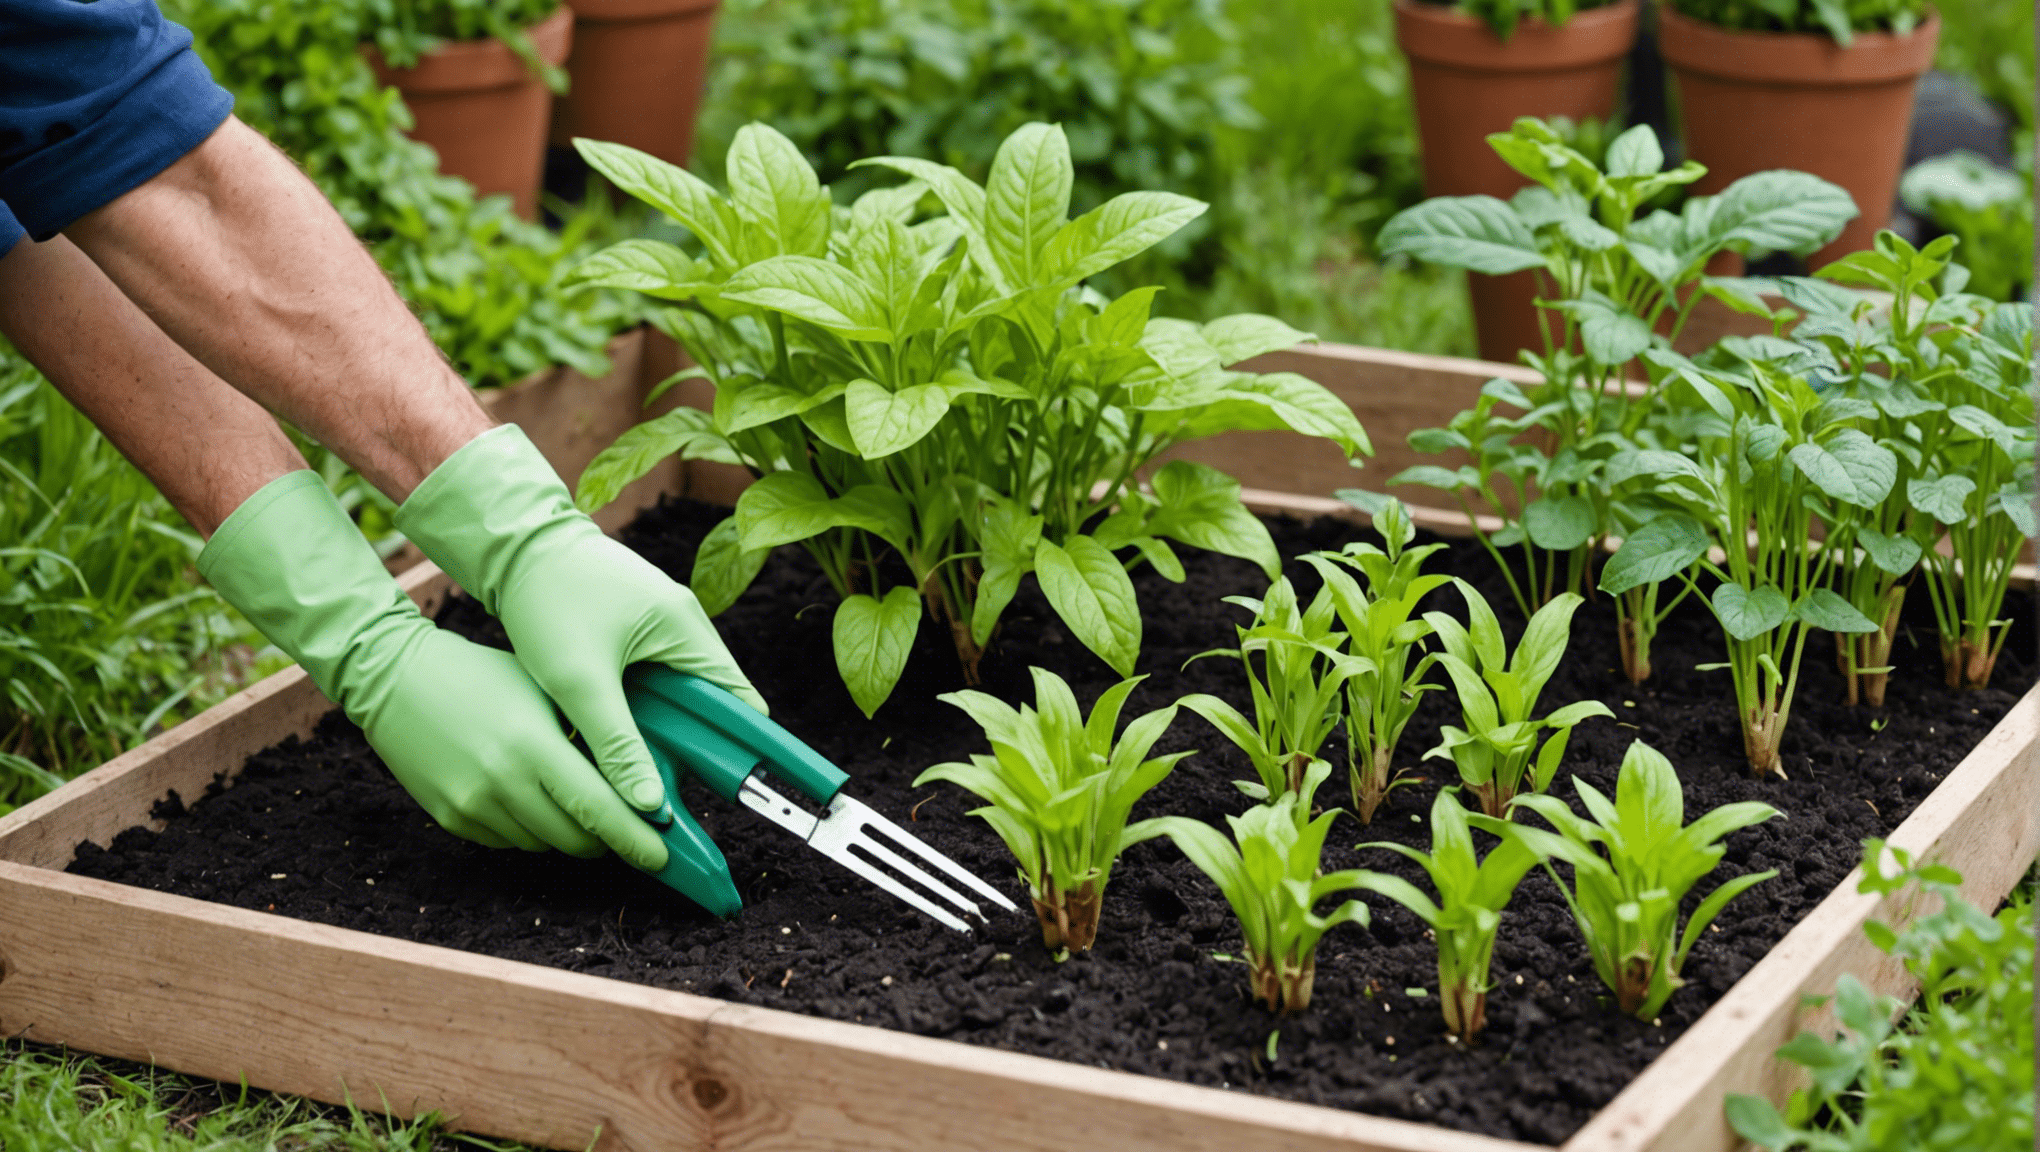 découvrez les avantages et les bienfaits du jardinage biologique pour l'environnement, la santé et la biodiversité.